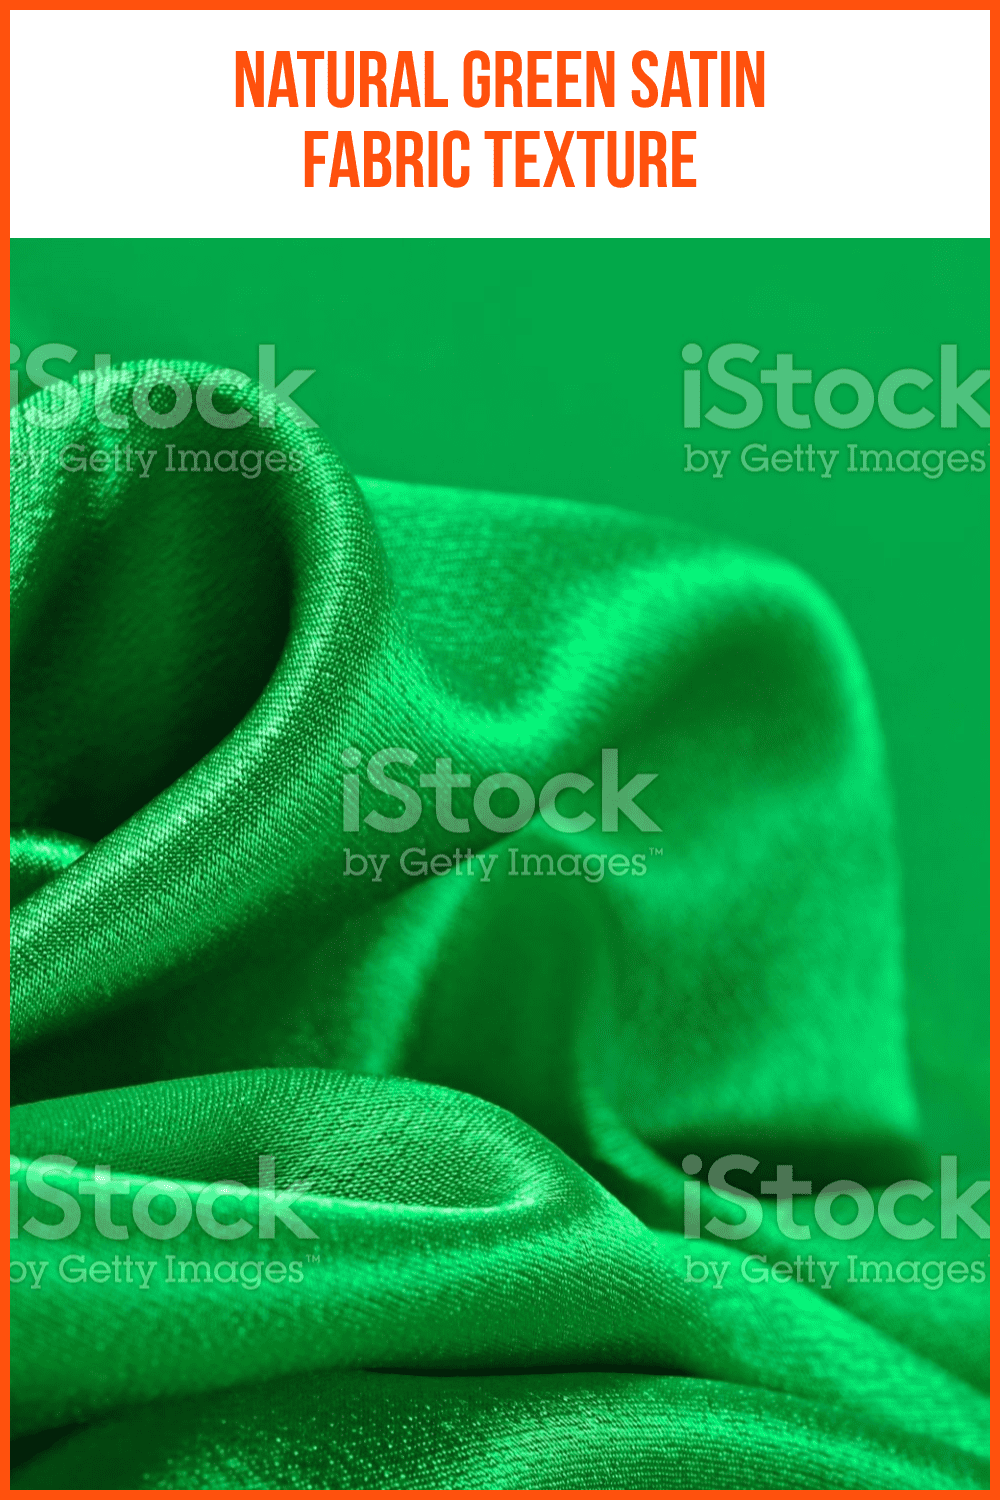 Natural Green Satin Fabric Texture.